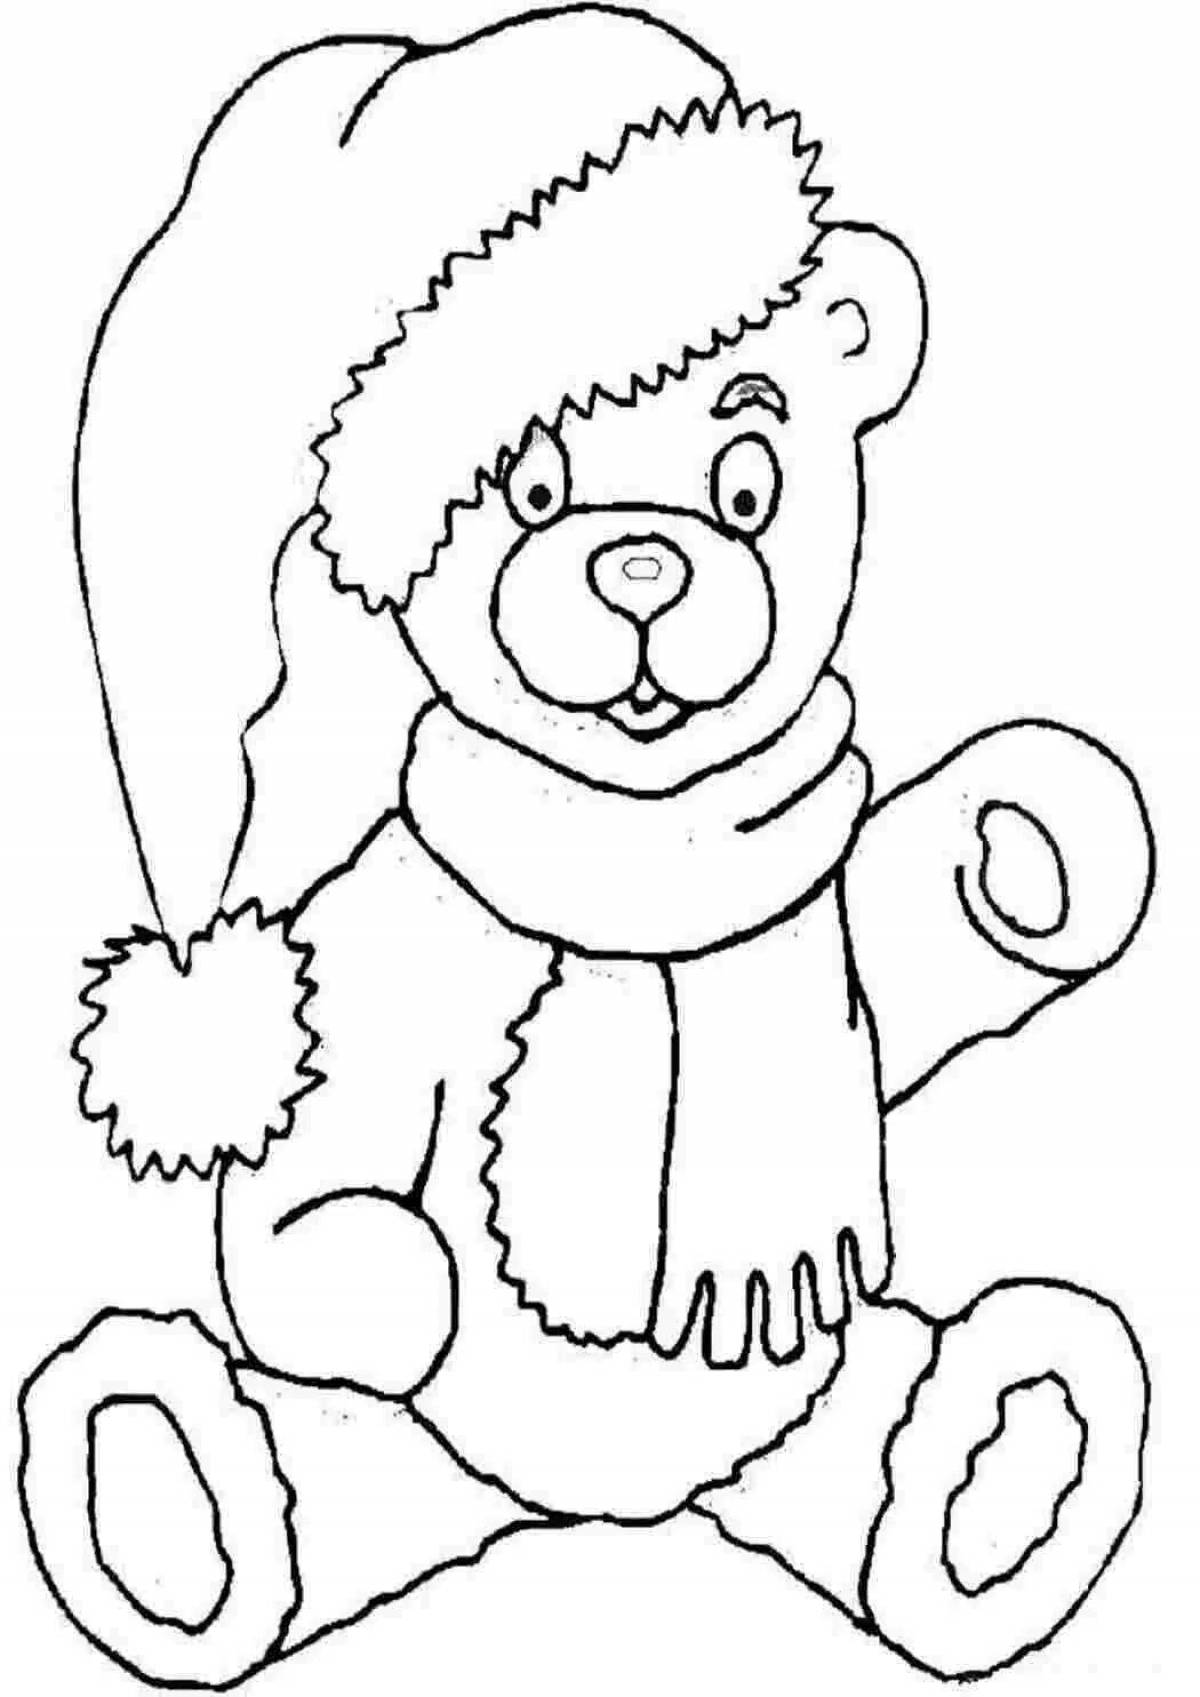 Coloring happy teddy bear